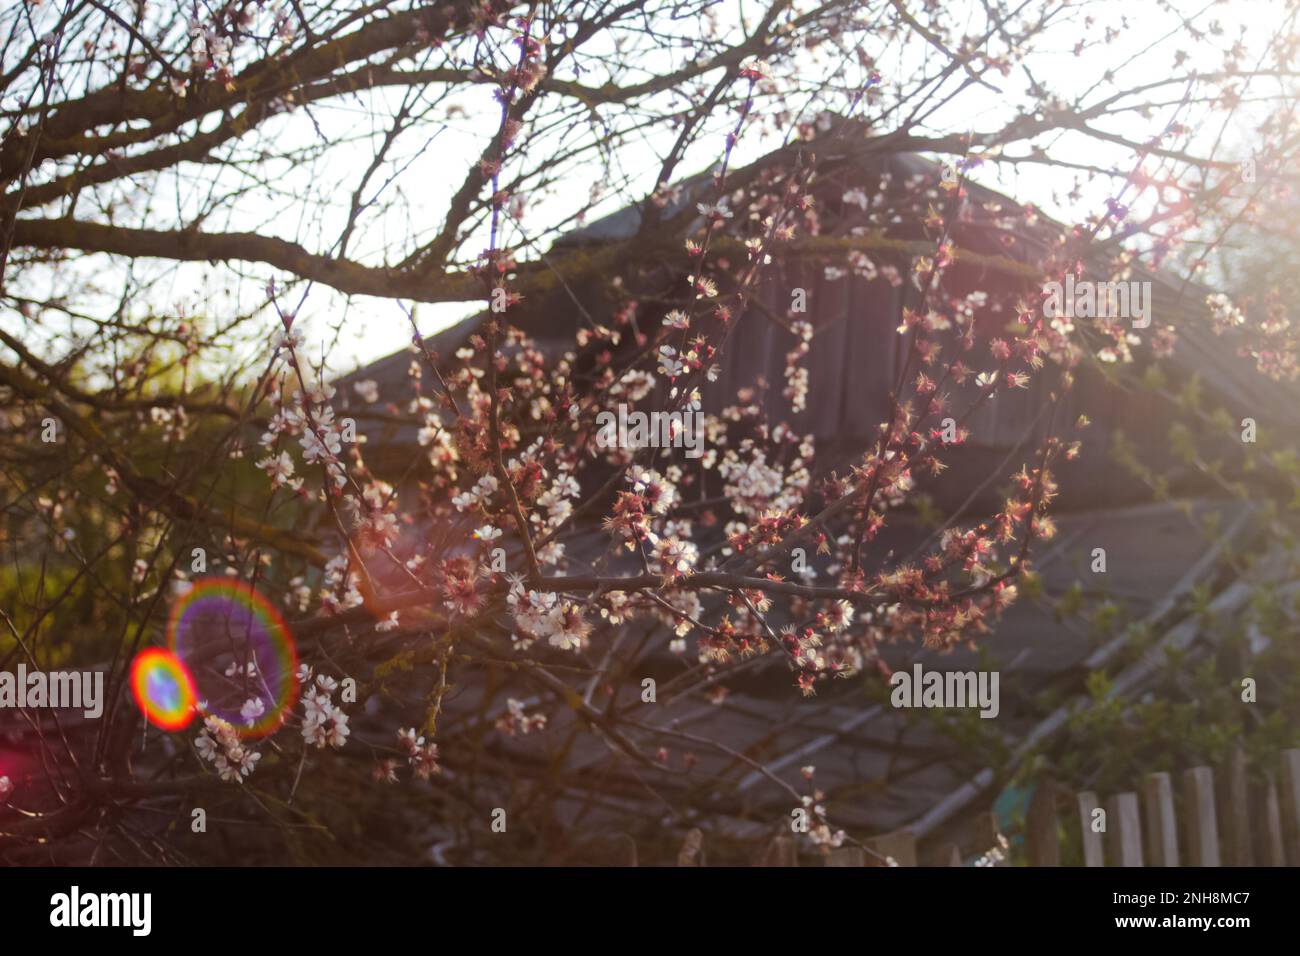 Refocalisation des branches fraîches de printemps de cerisier avec des fleurs, floral naturel saison de pâques fond. Magnifique arbre rouge fleuri. Fermeture au printemps Banque D'Images